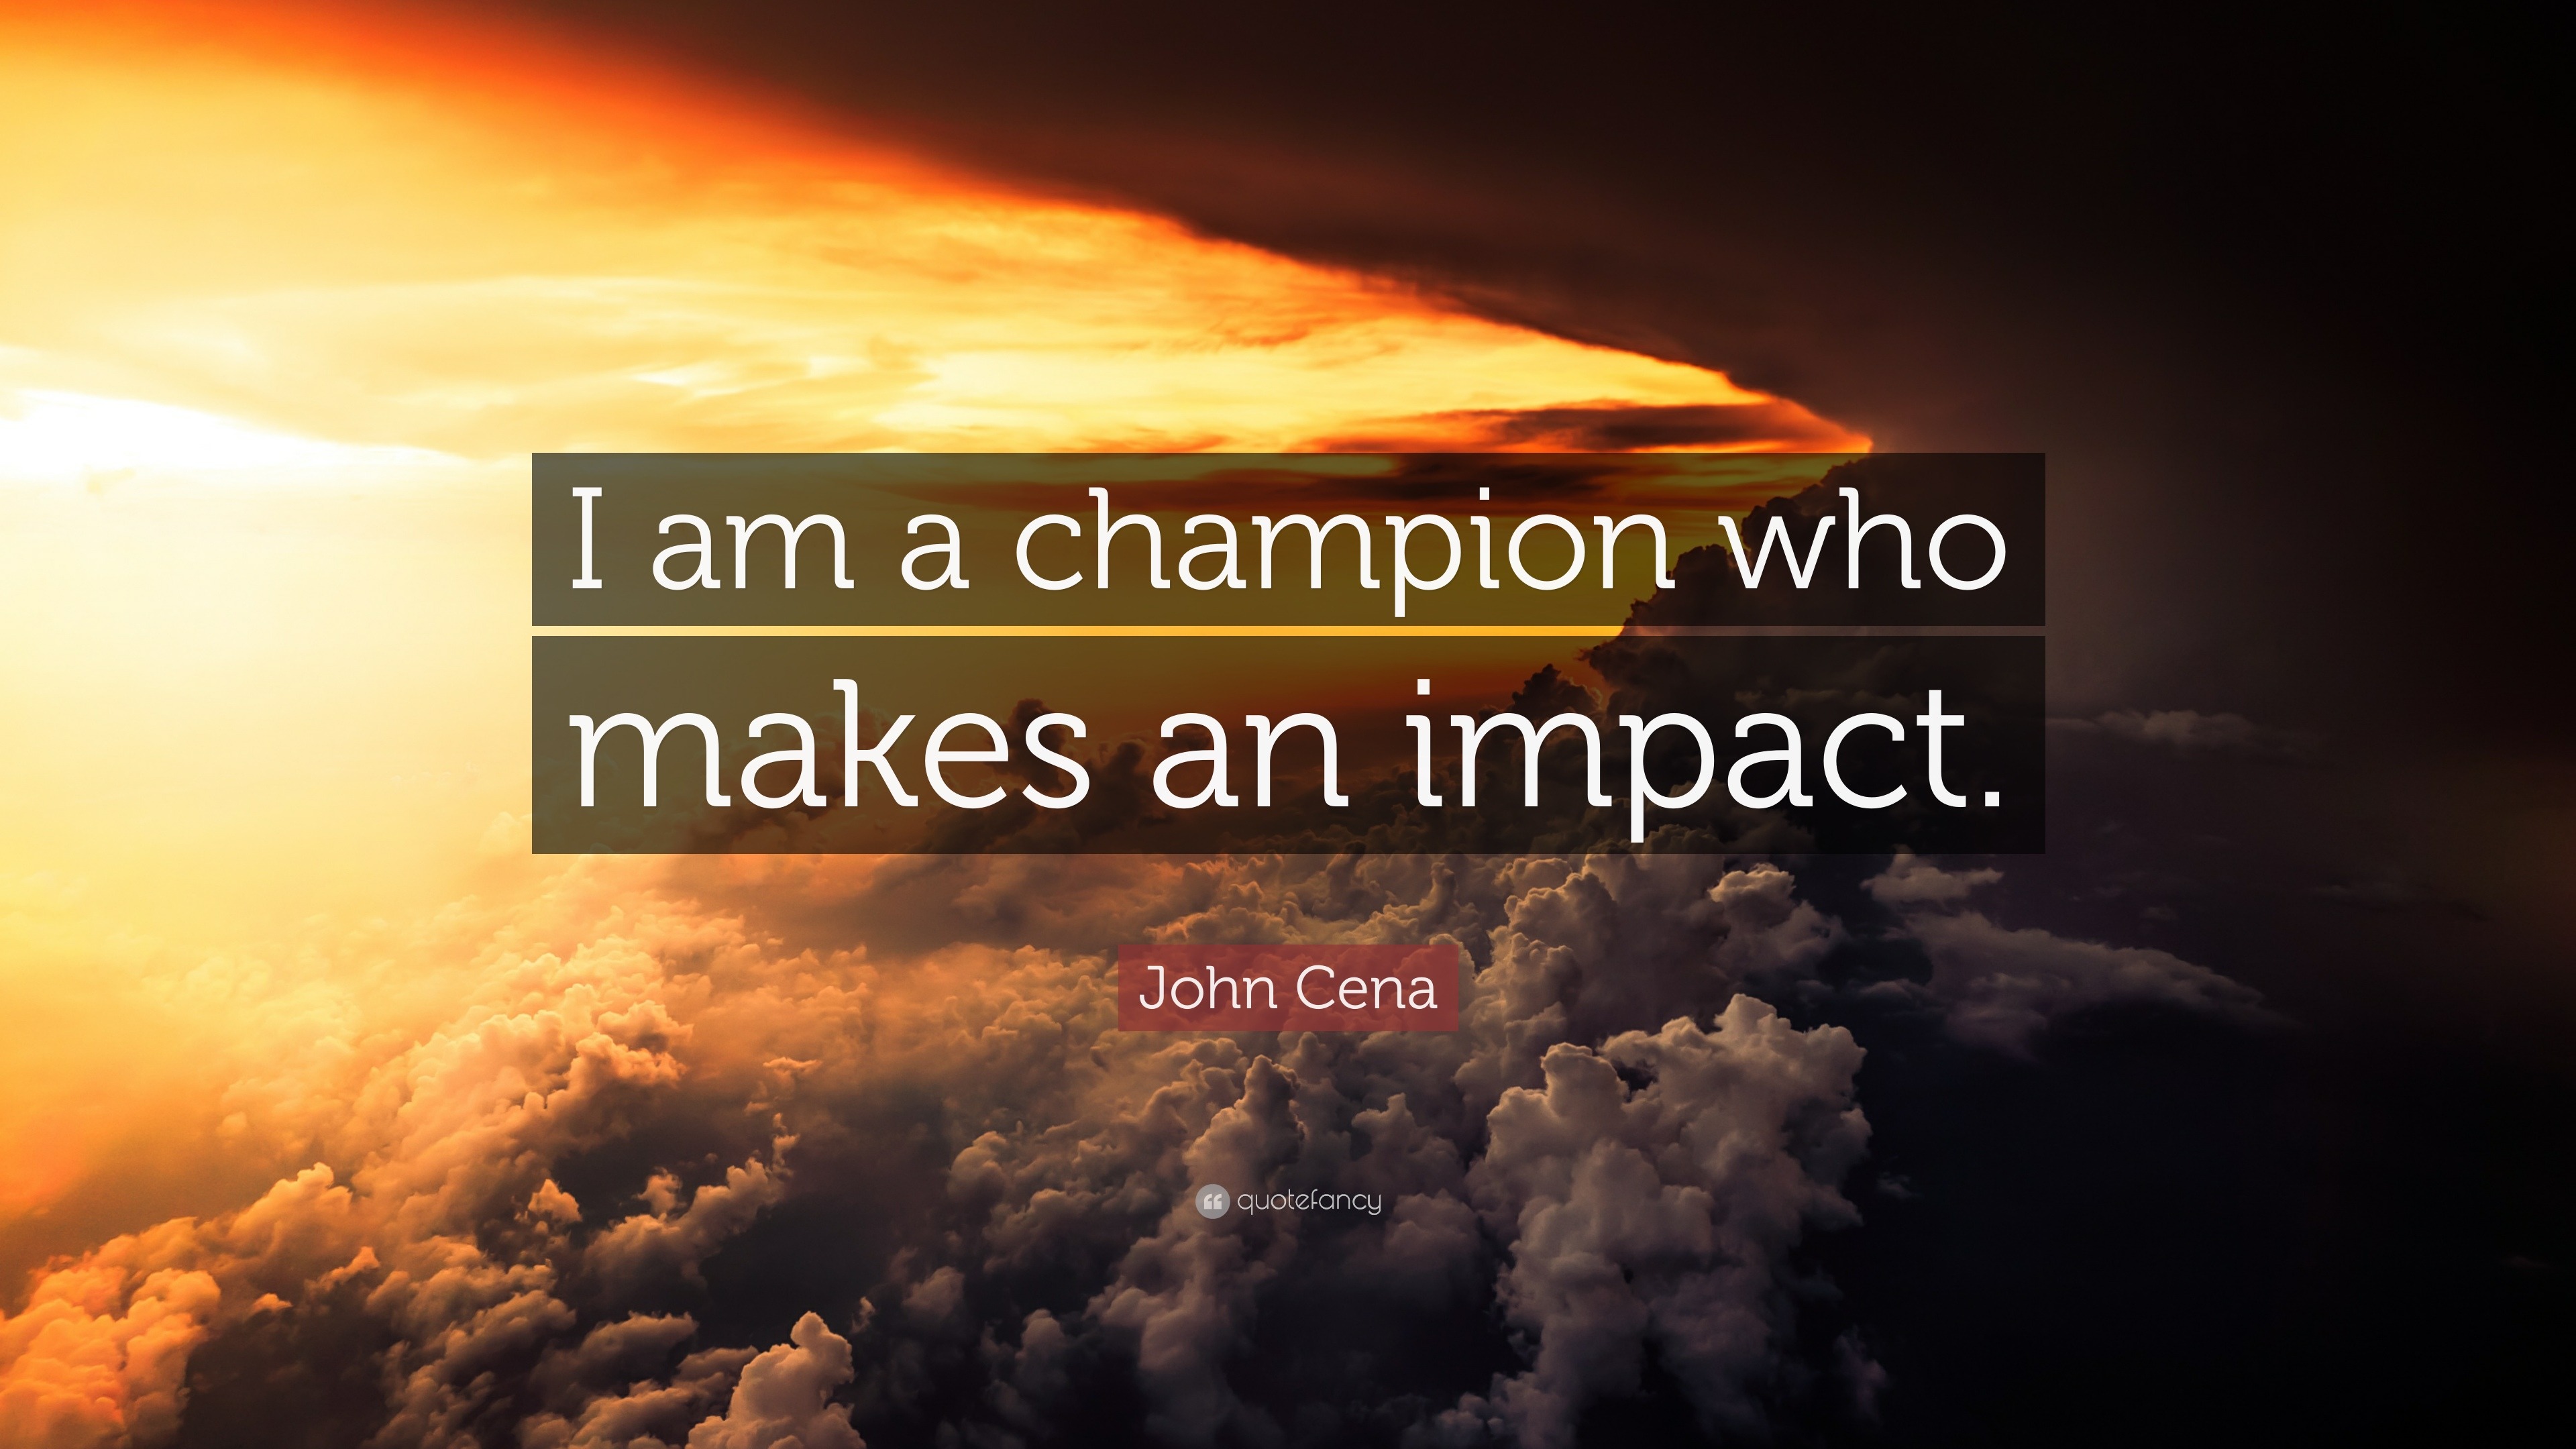 John Cena “I am champion who makes an